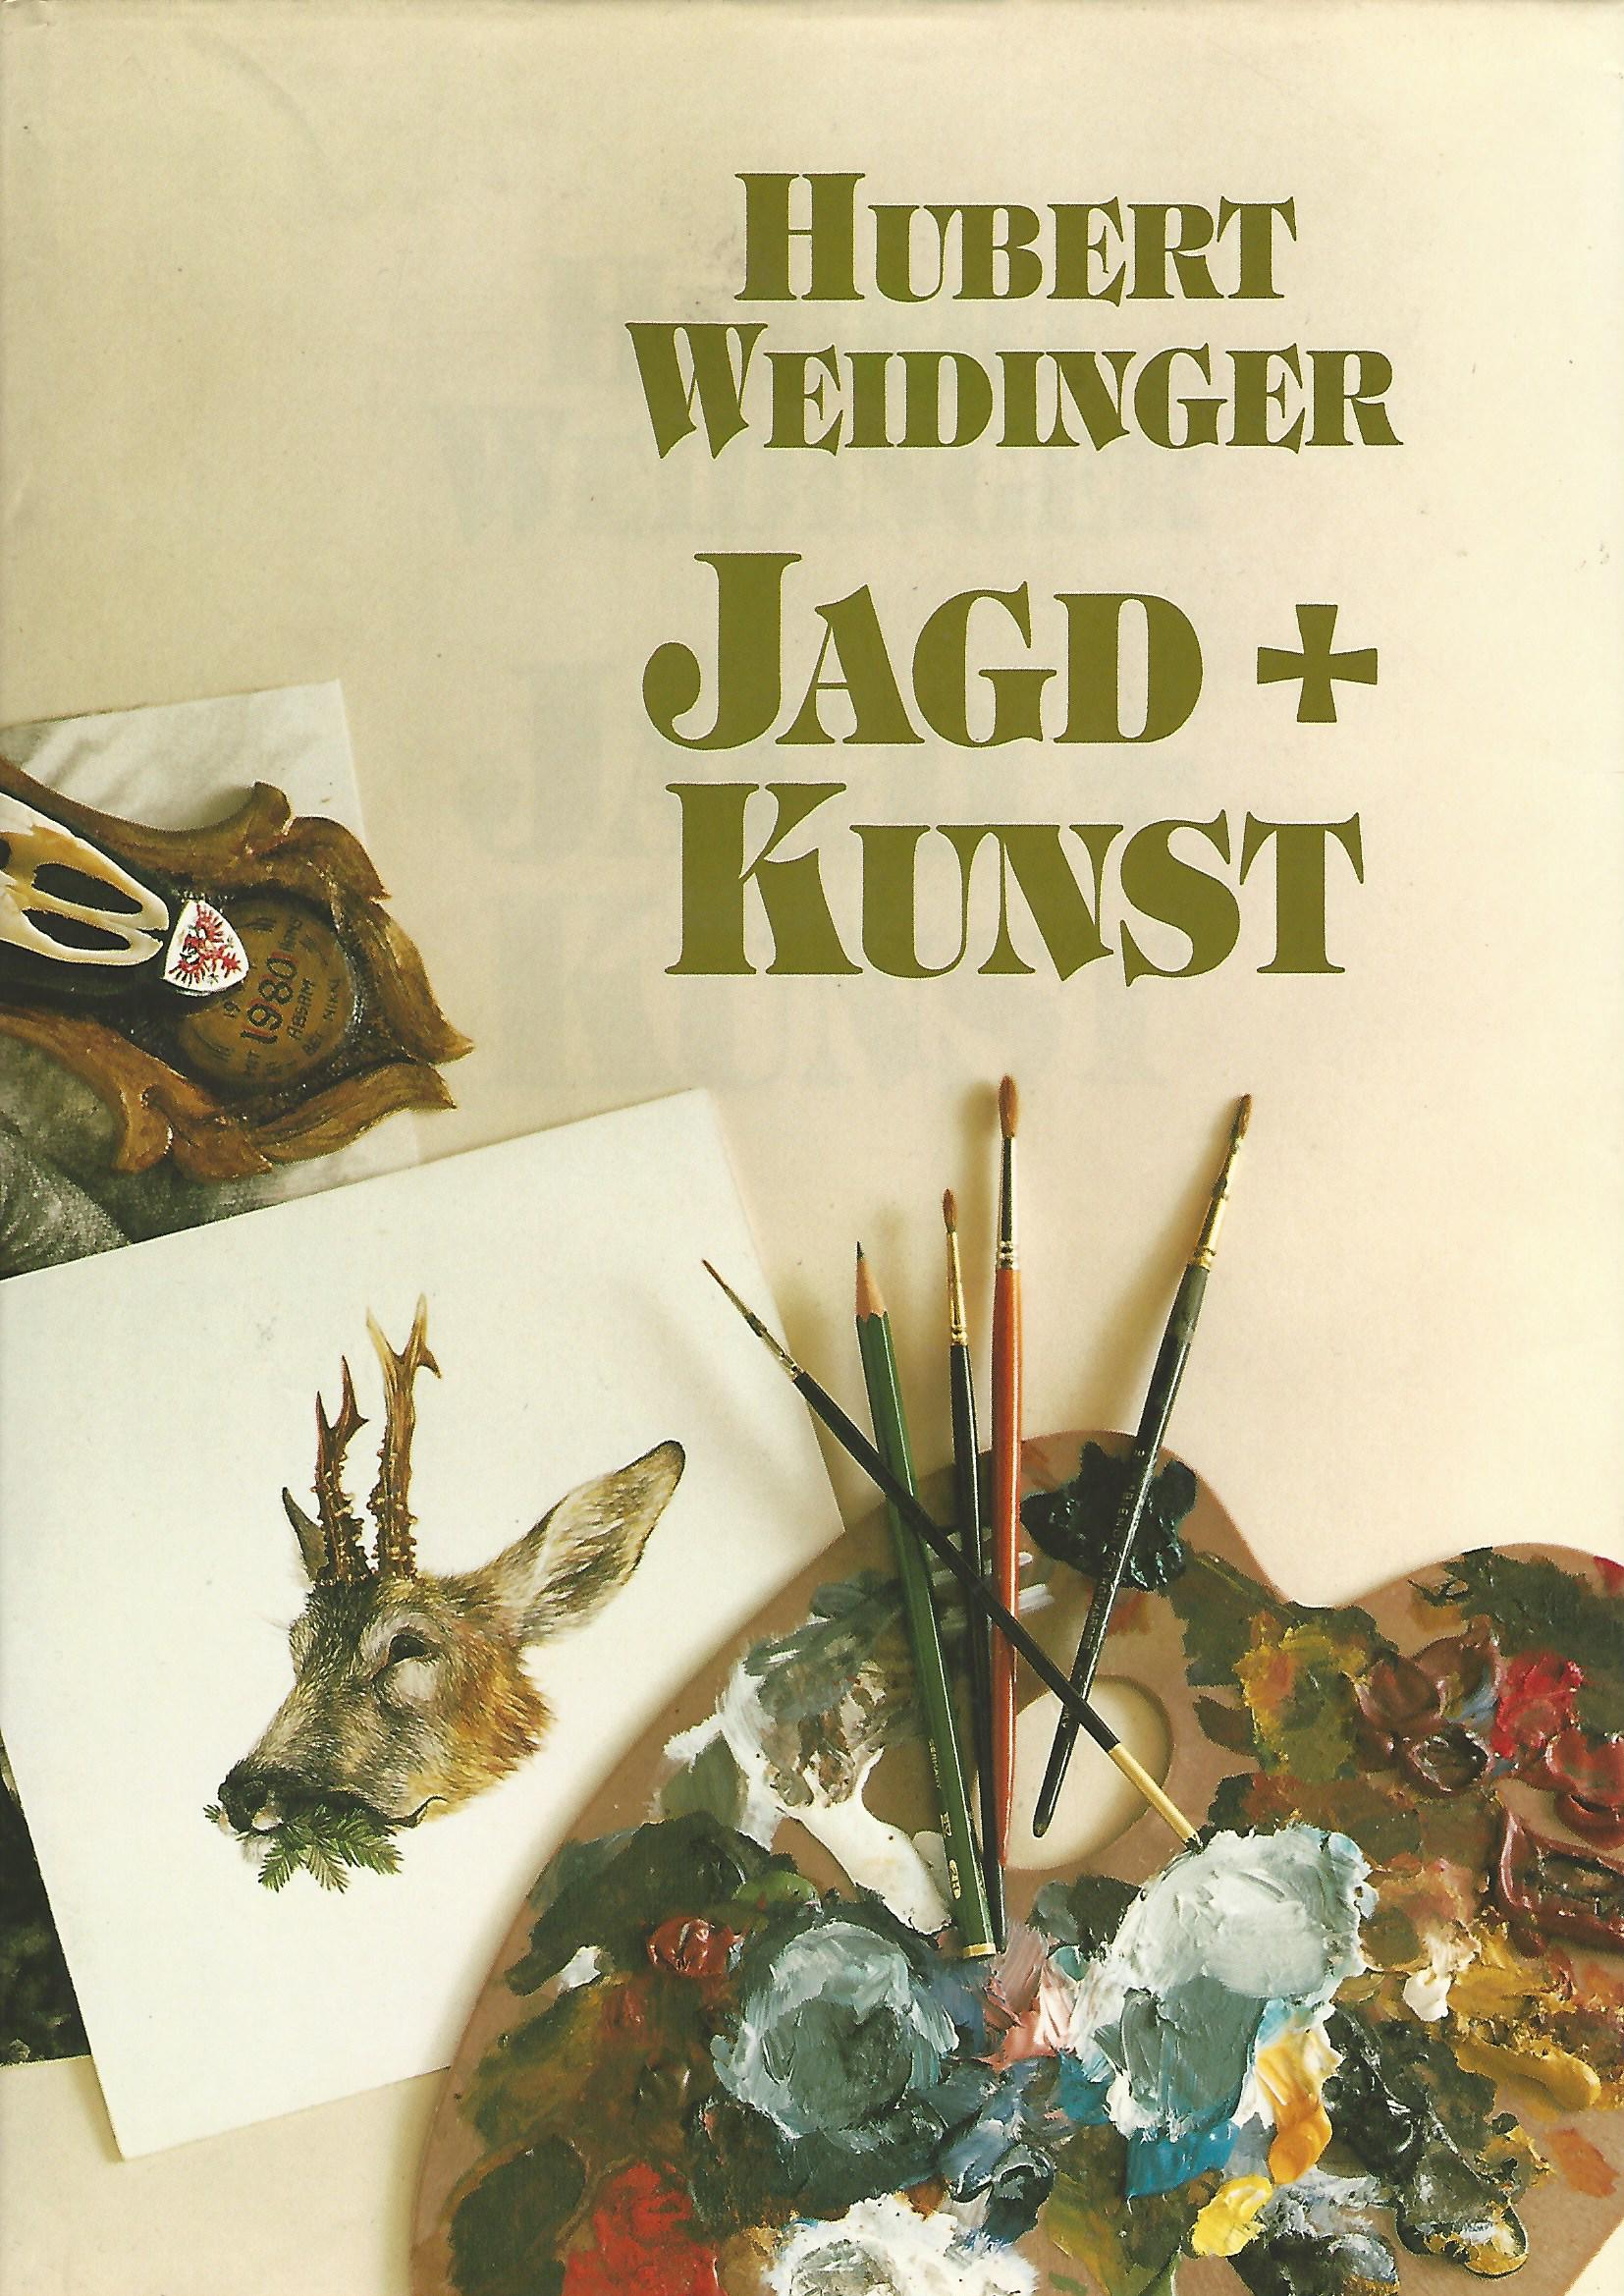 Image for Jagd + Kunst.